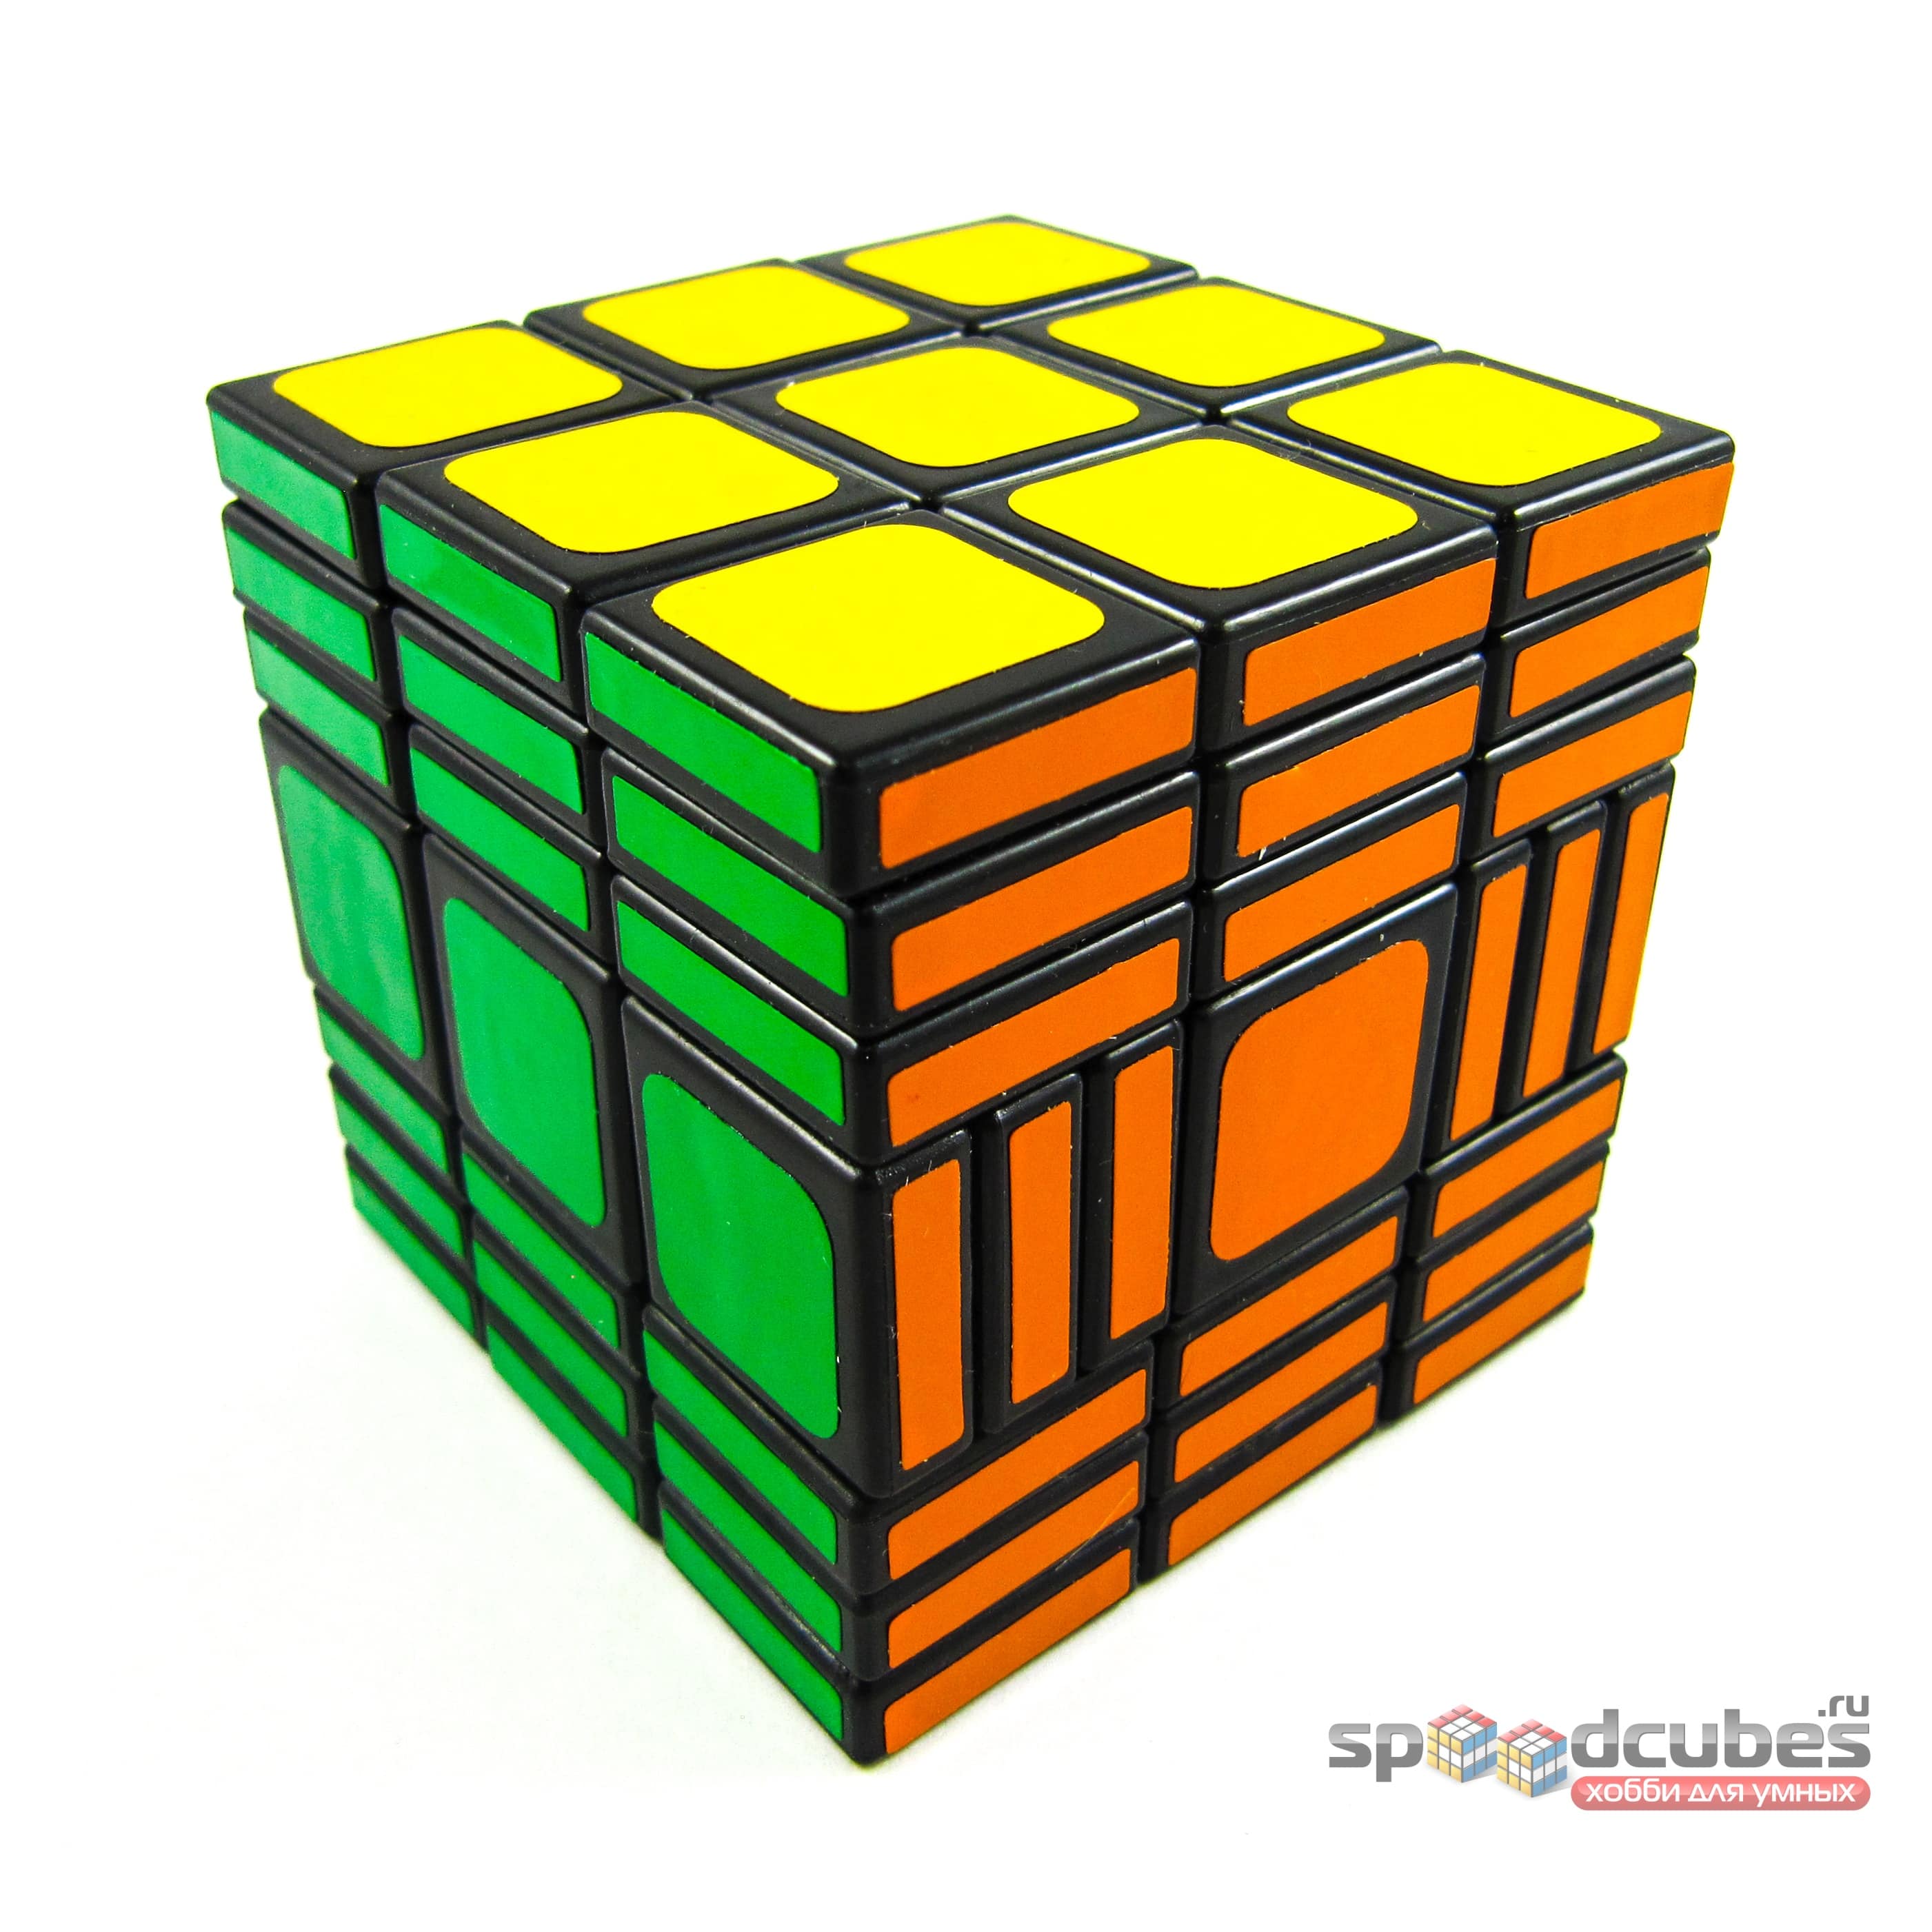 Witeden 3x3x7 Cubic 2